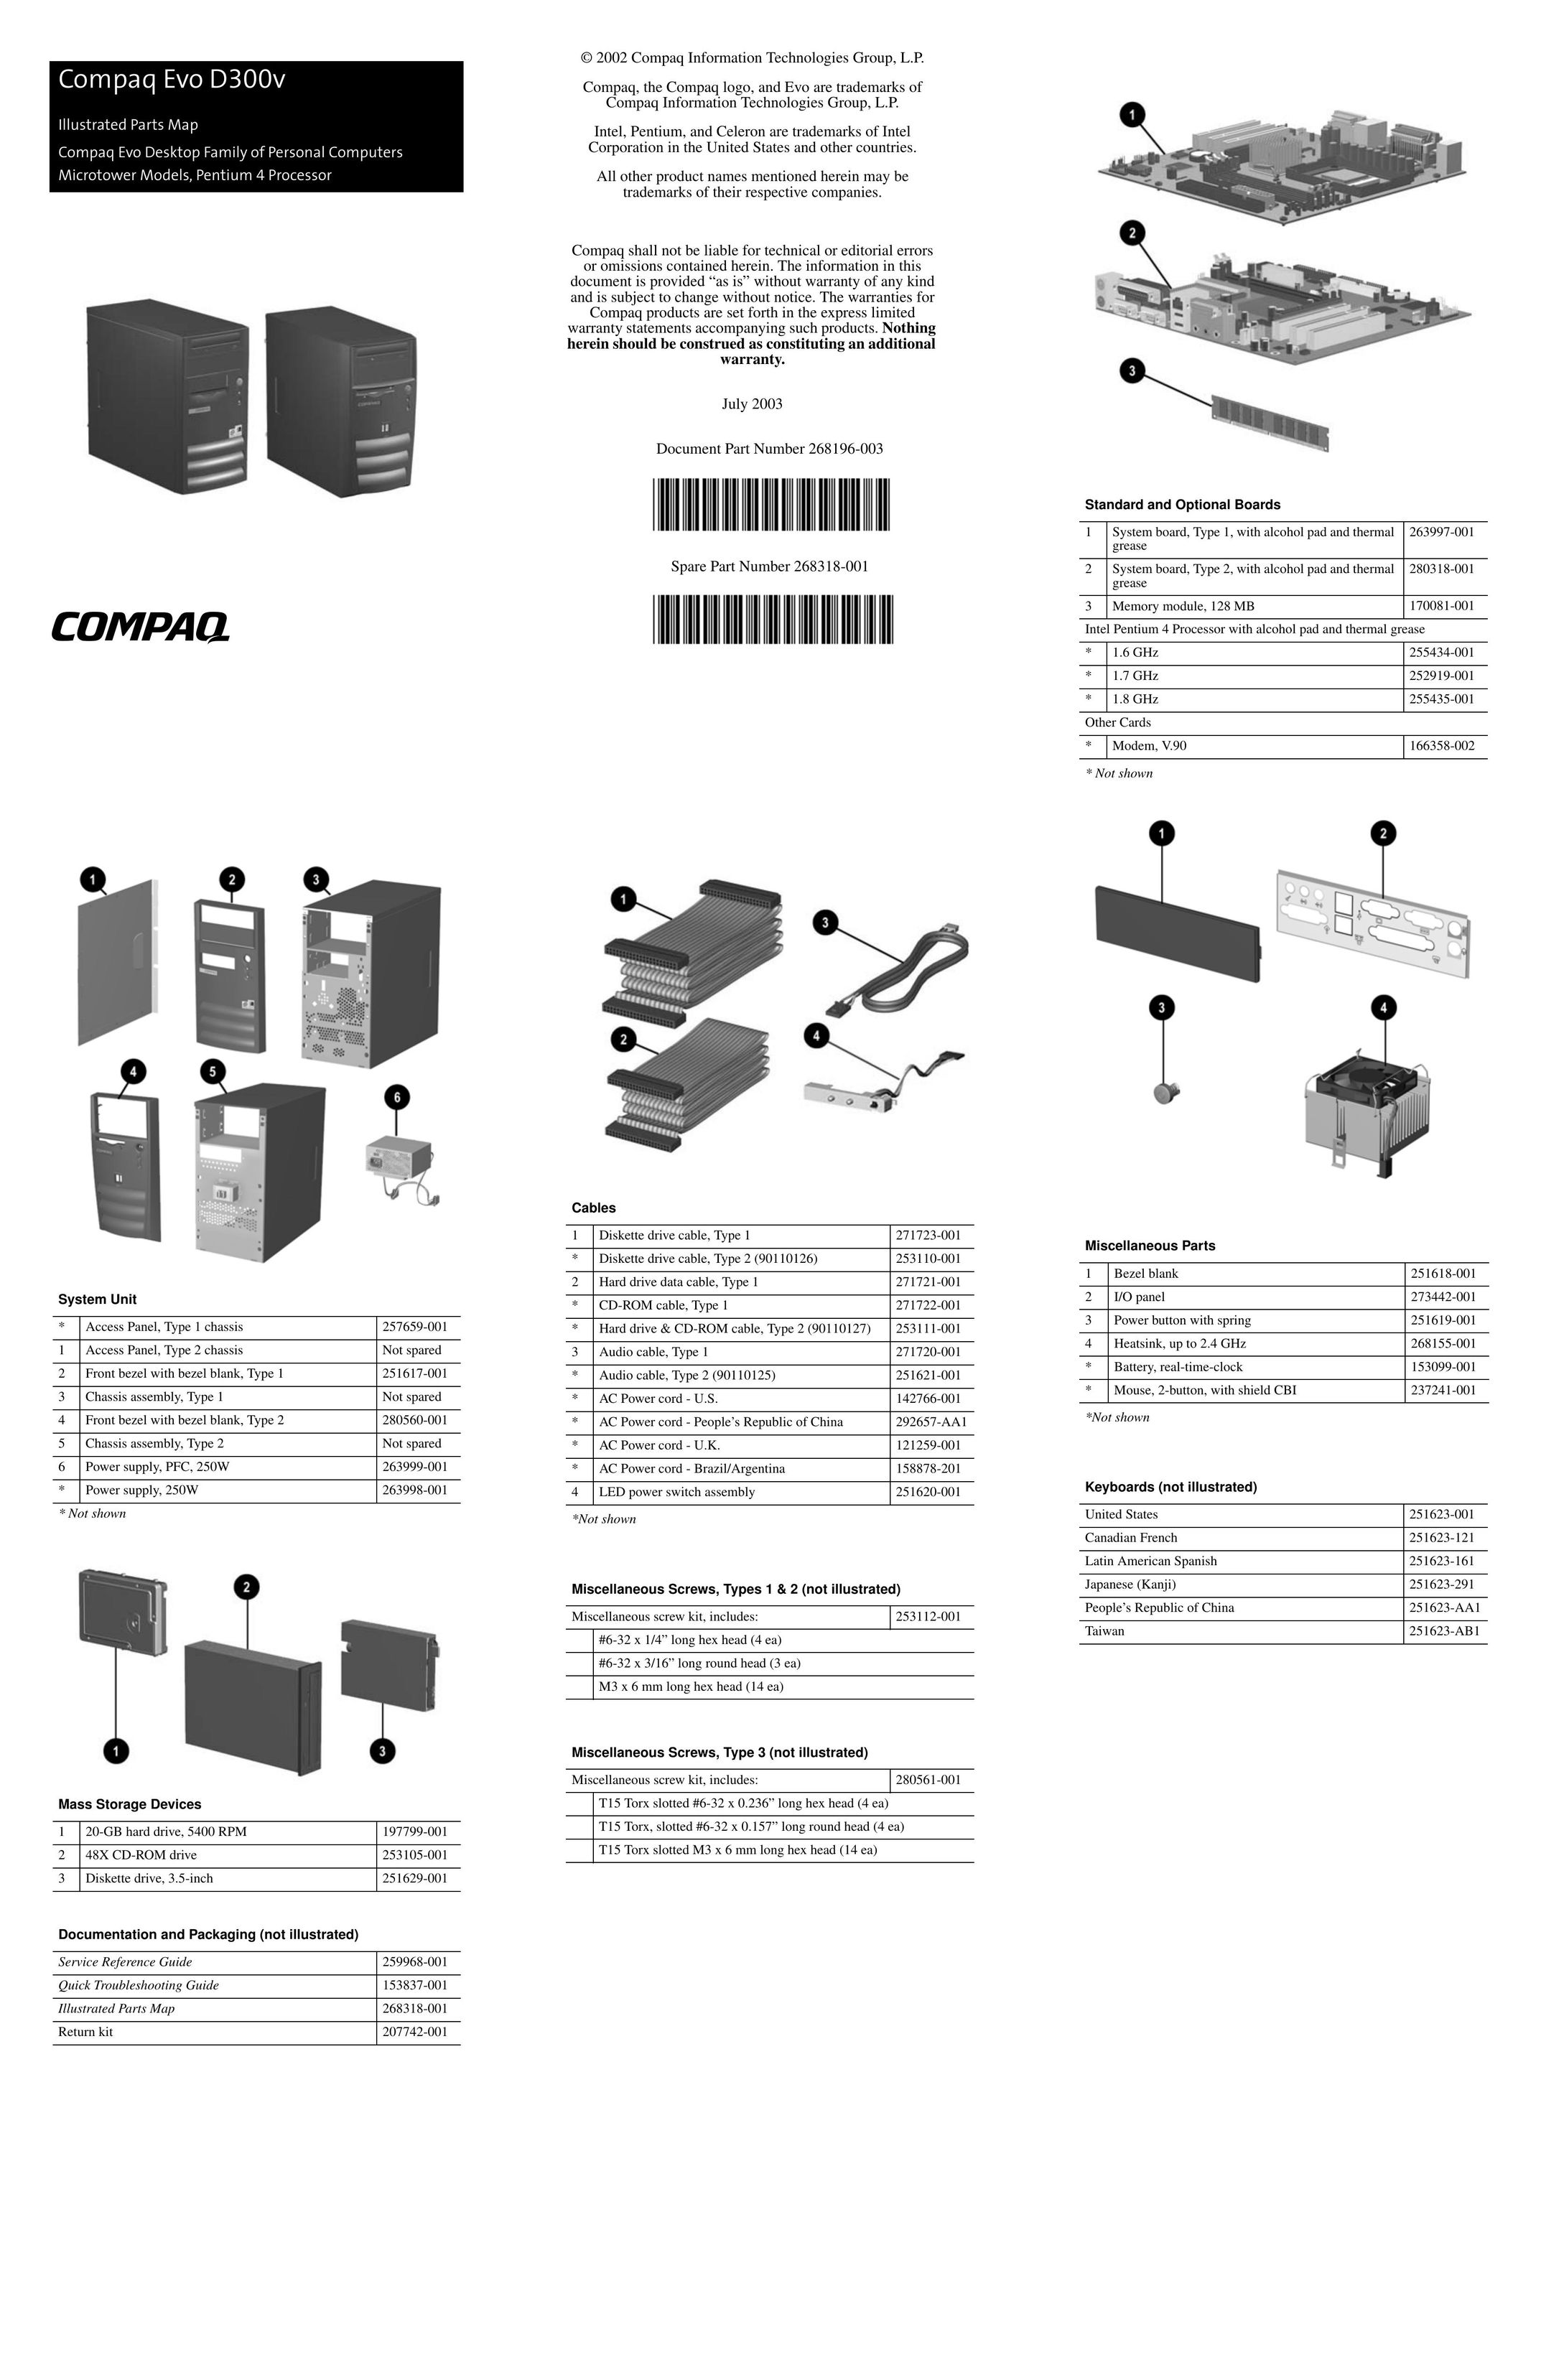 Compaq D300V Computer Accessories User Manual